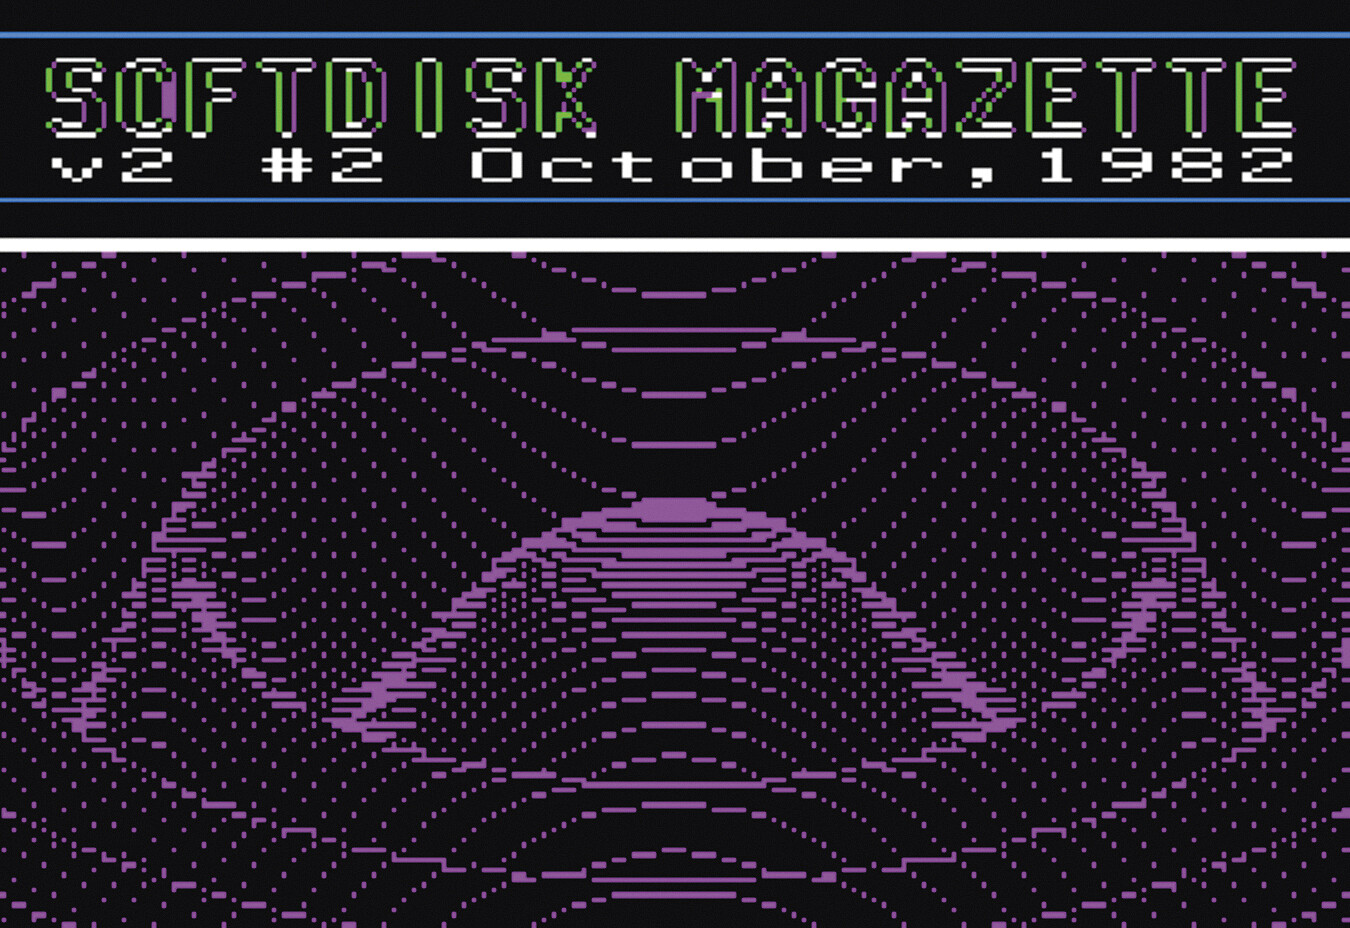 Cover des Magazins Softdisk mit der Aufschrift „SOFTDISK MAGAZETTE v2 #2 October, 1982“ und einer pixeligen Interpretation des Ripple-Effekts.